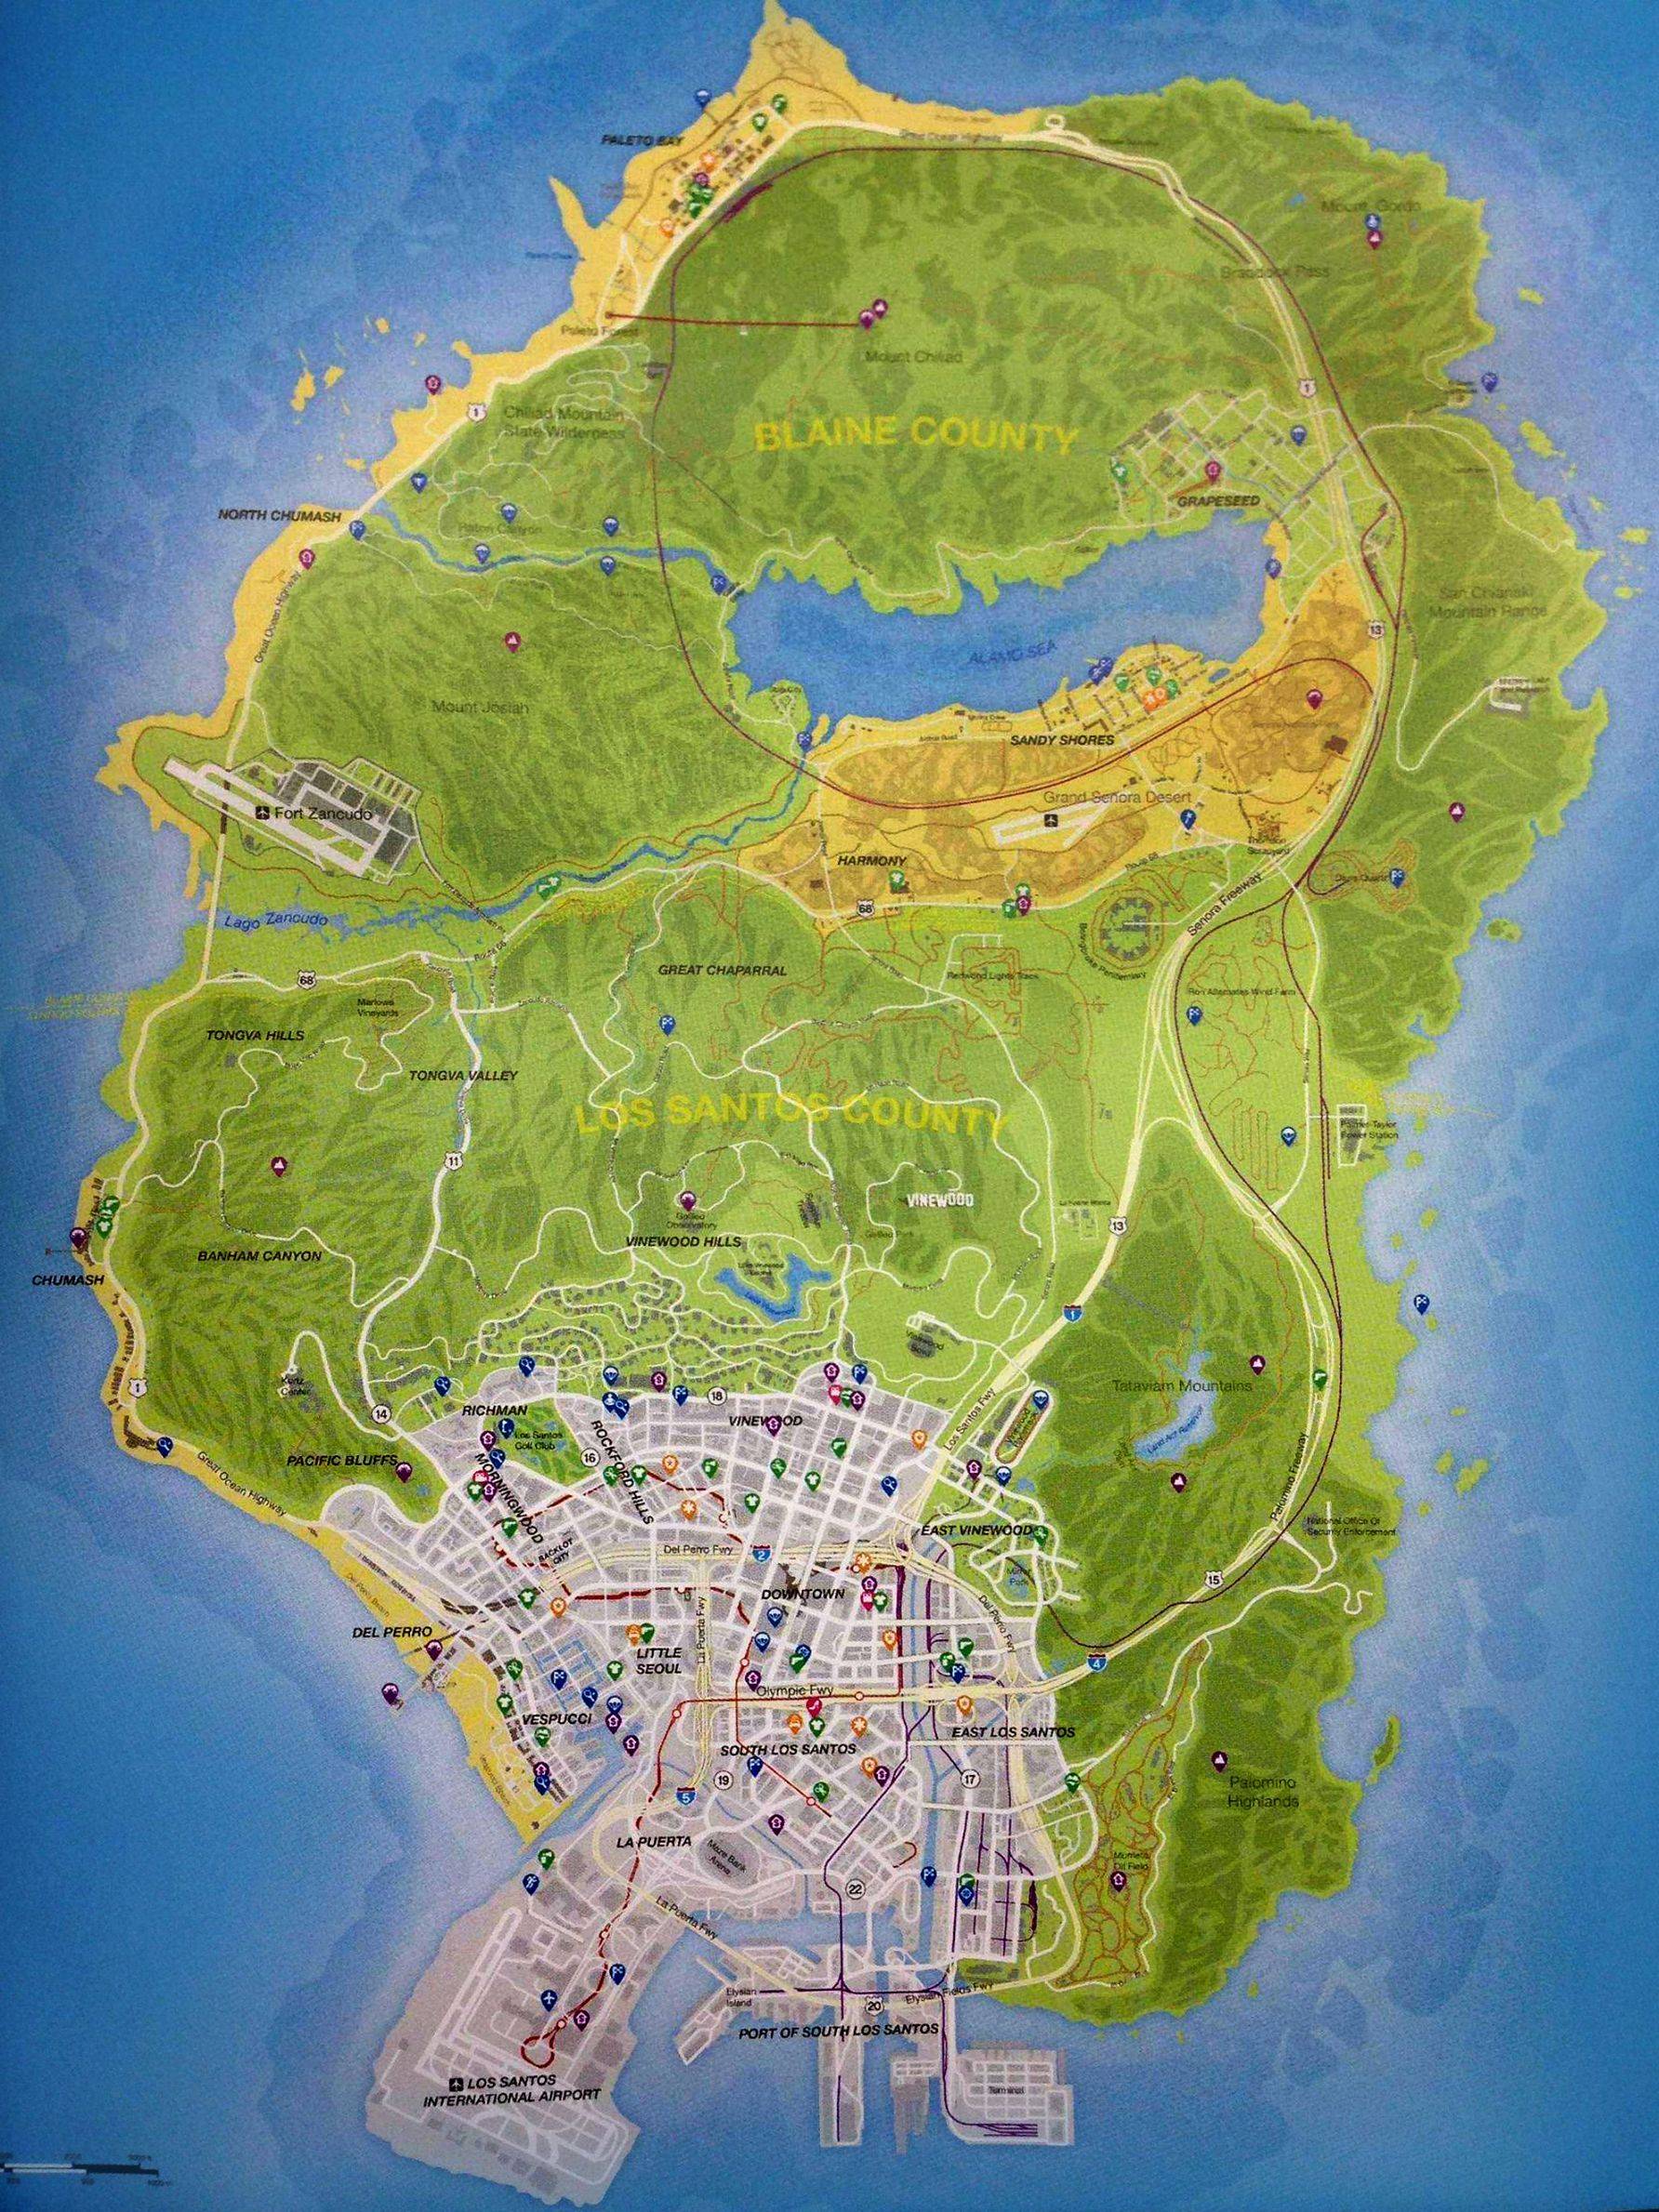 Mapa de GTA V em forma de Google Maps